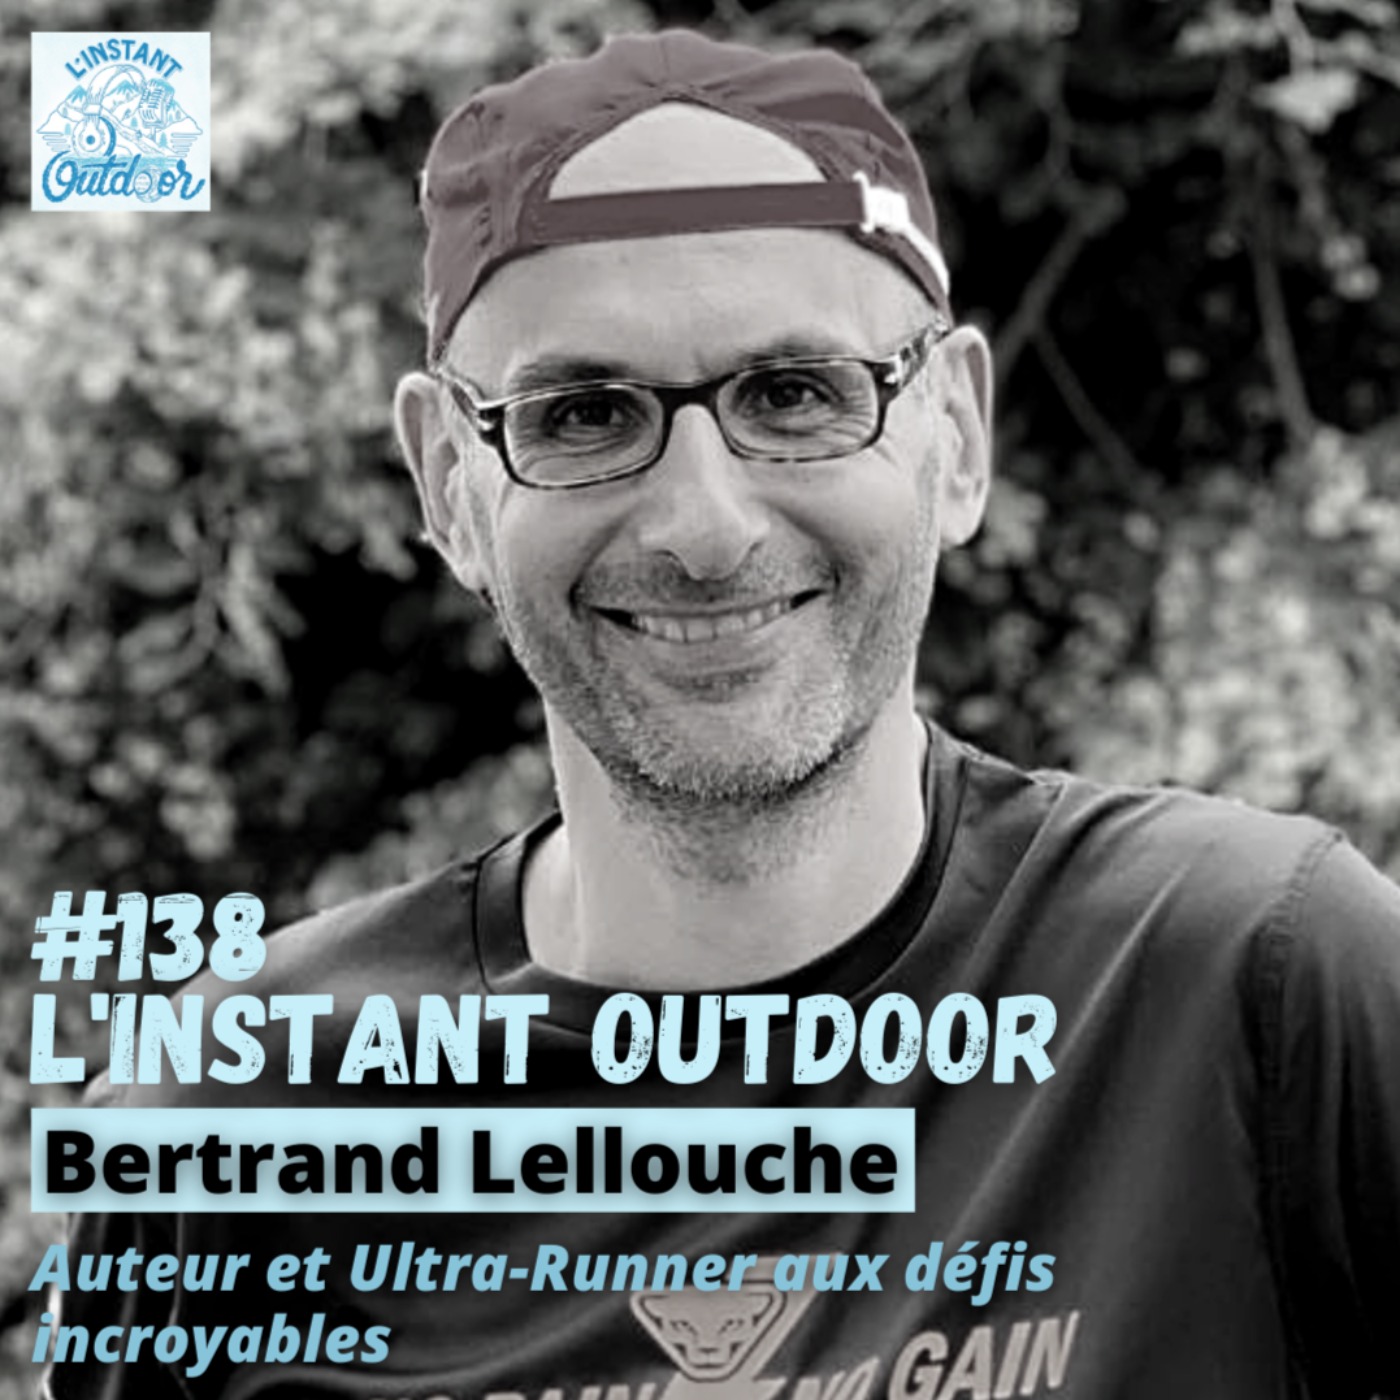 Bertrand Lellouche - Auteur et Ultra-Runner aux défis incroyables